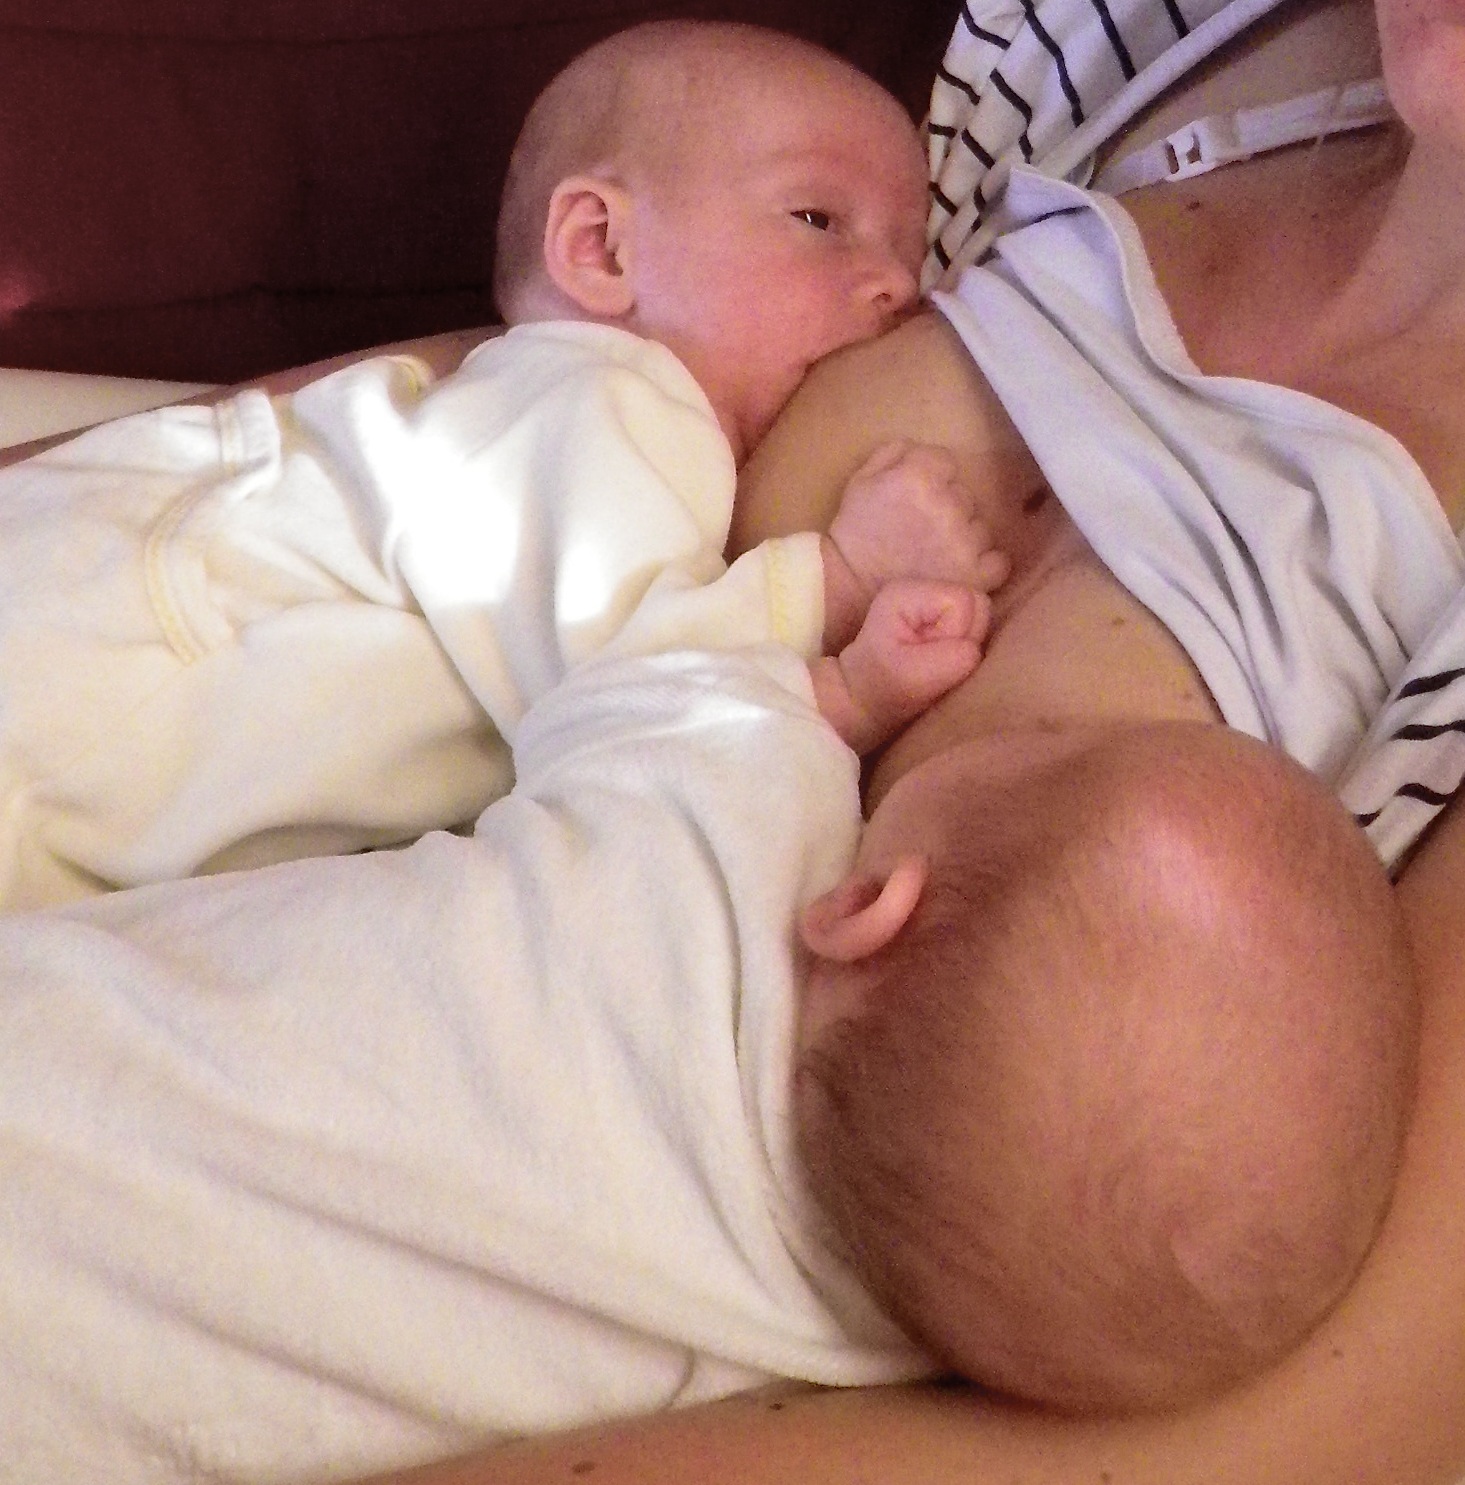 lactancia materna gemelos mellizos criando múltiples